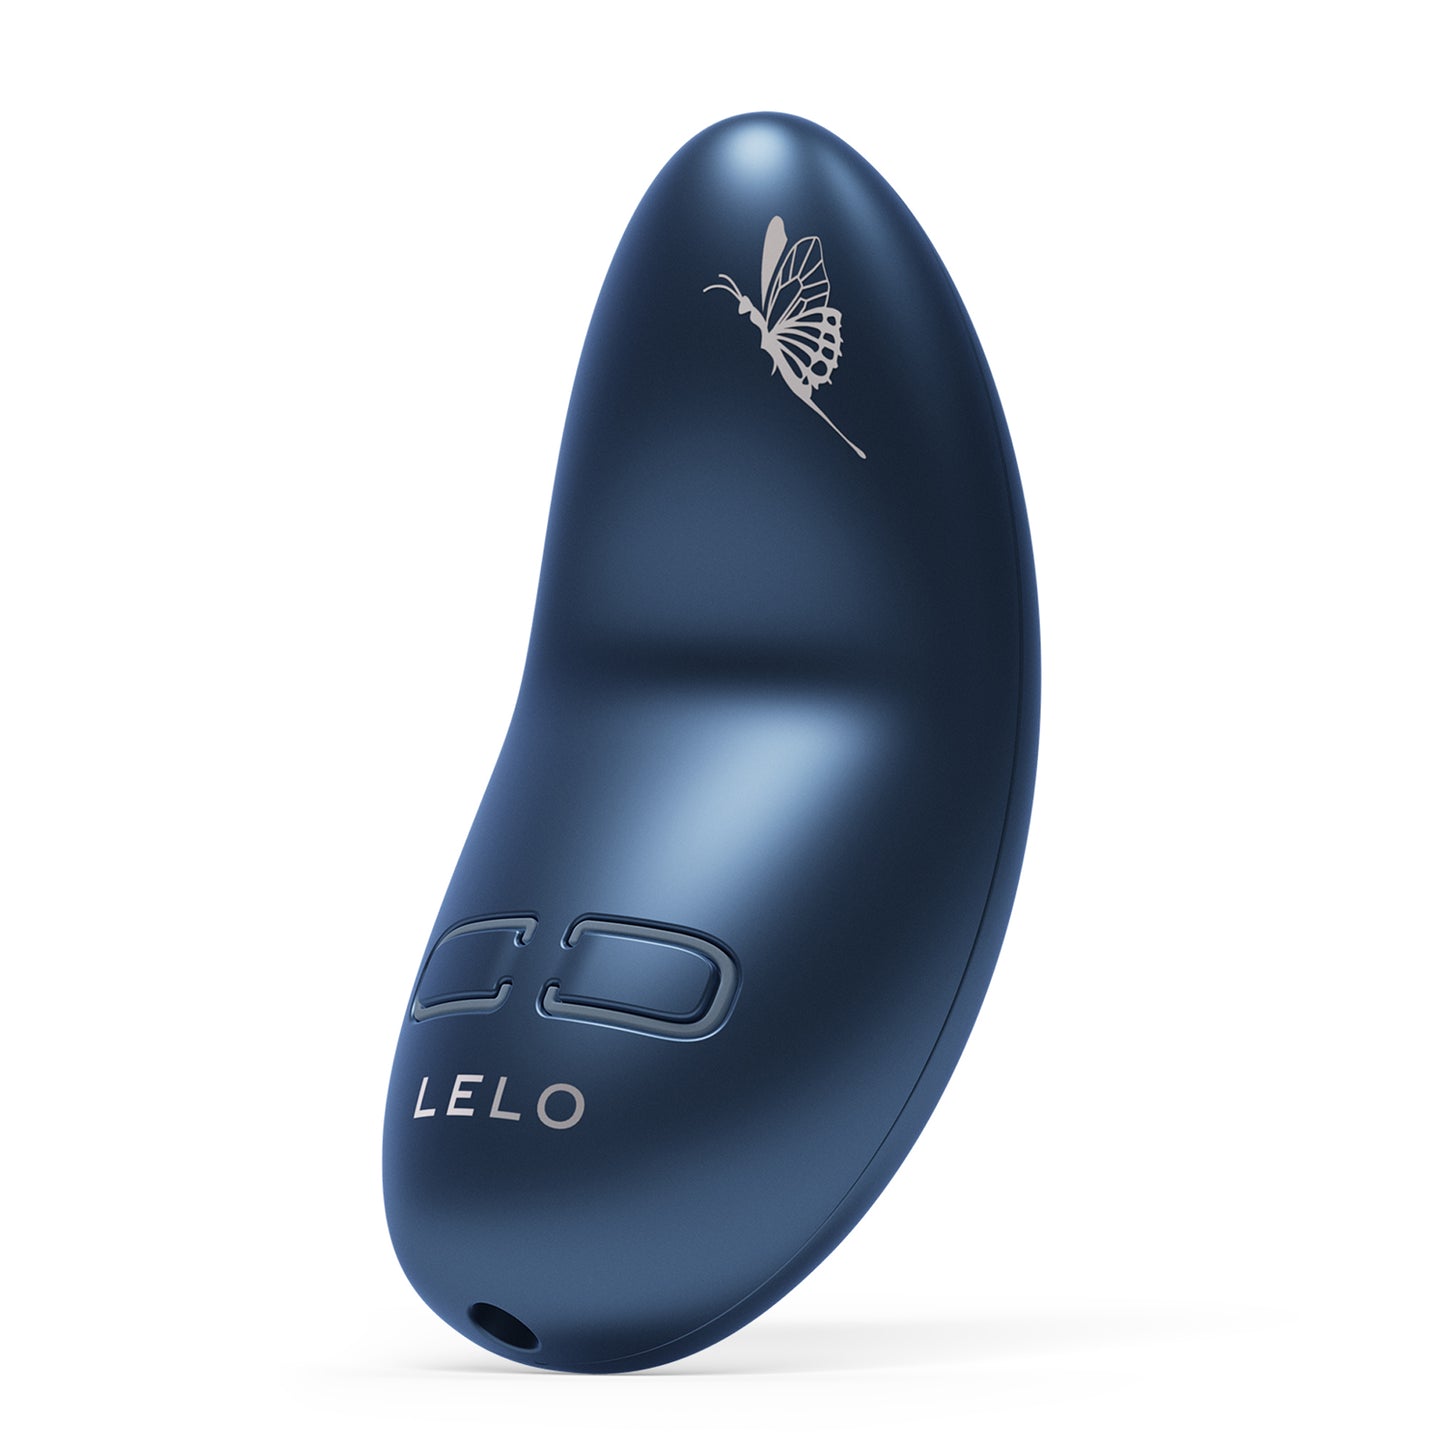 Lelo - Nea 3 Personal Massager Alien Blue - 4